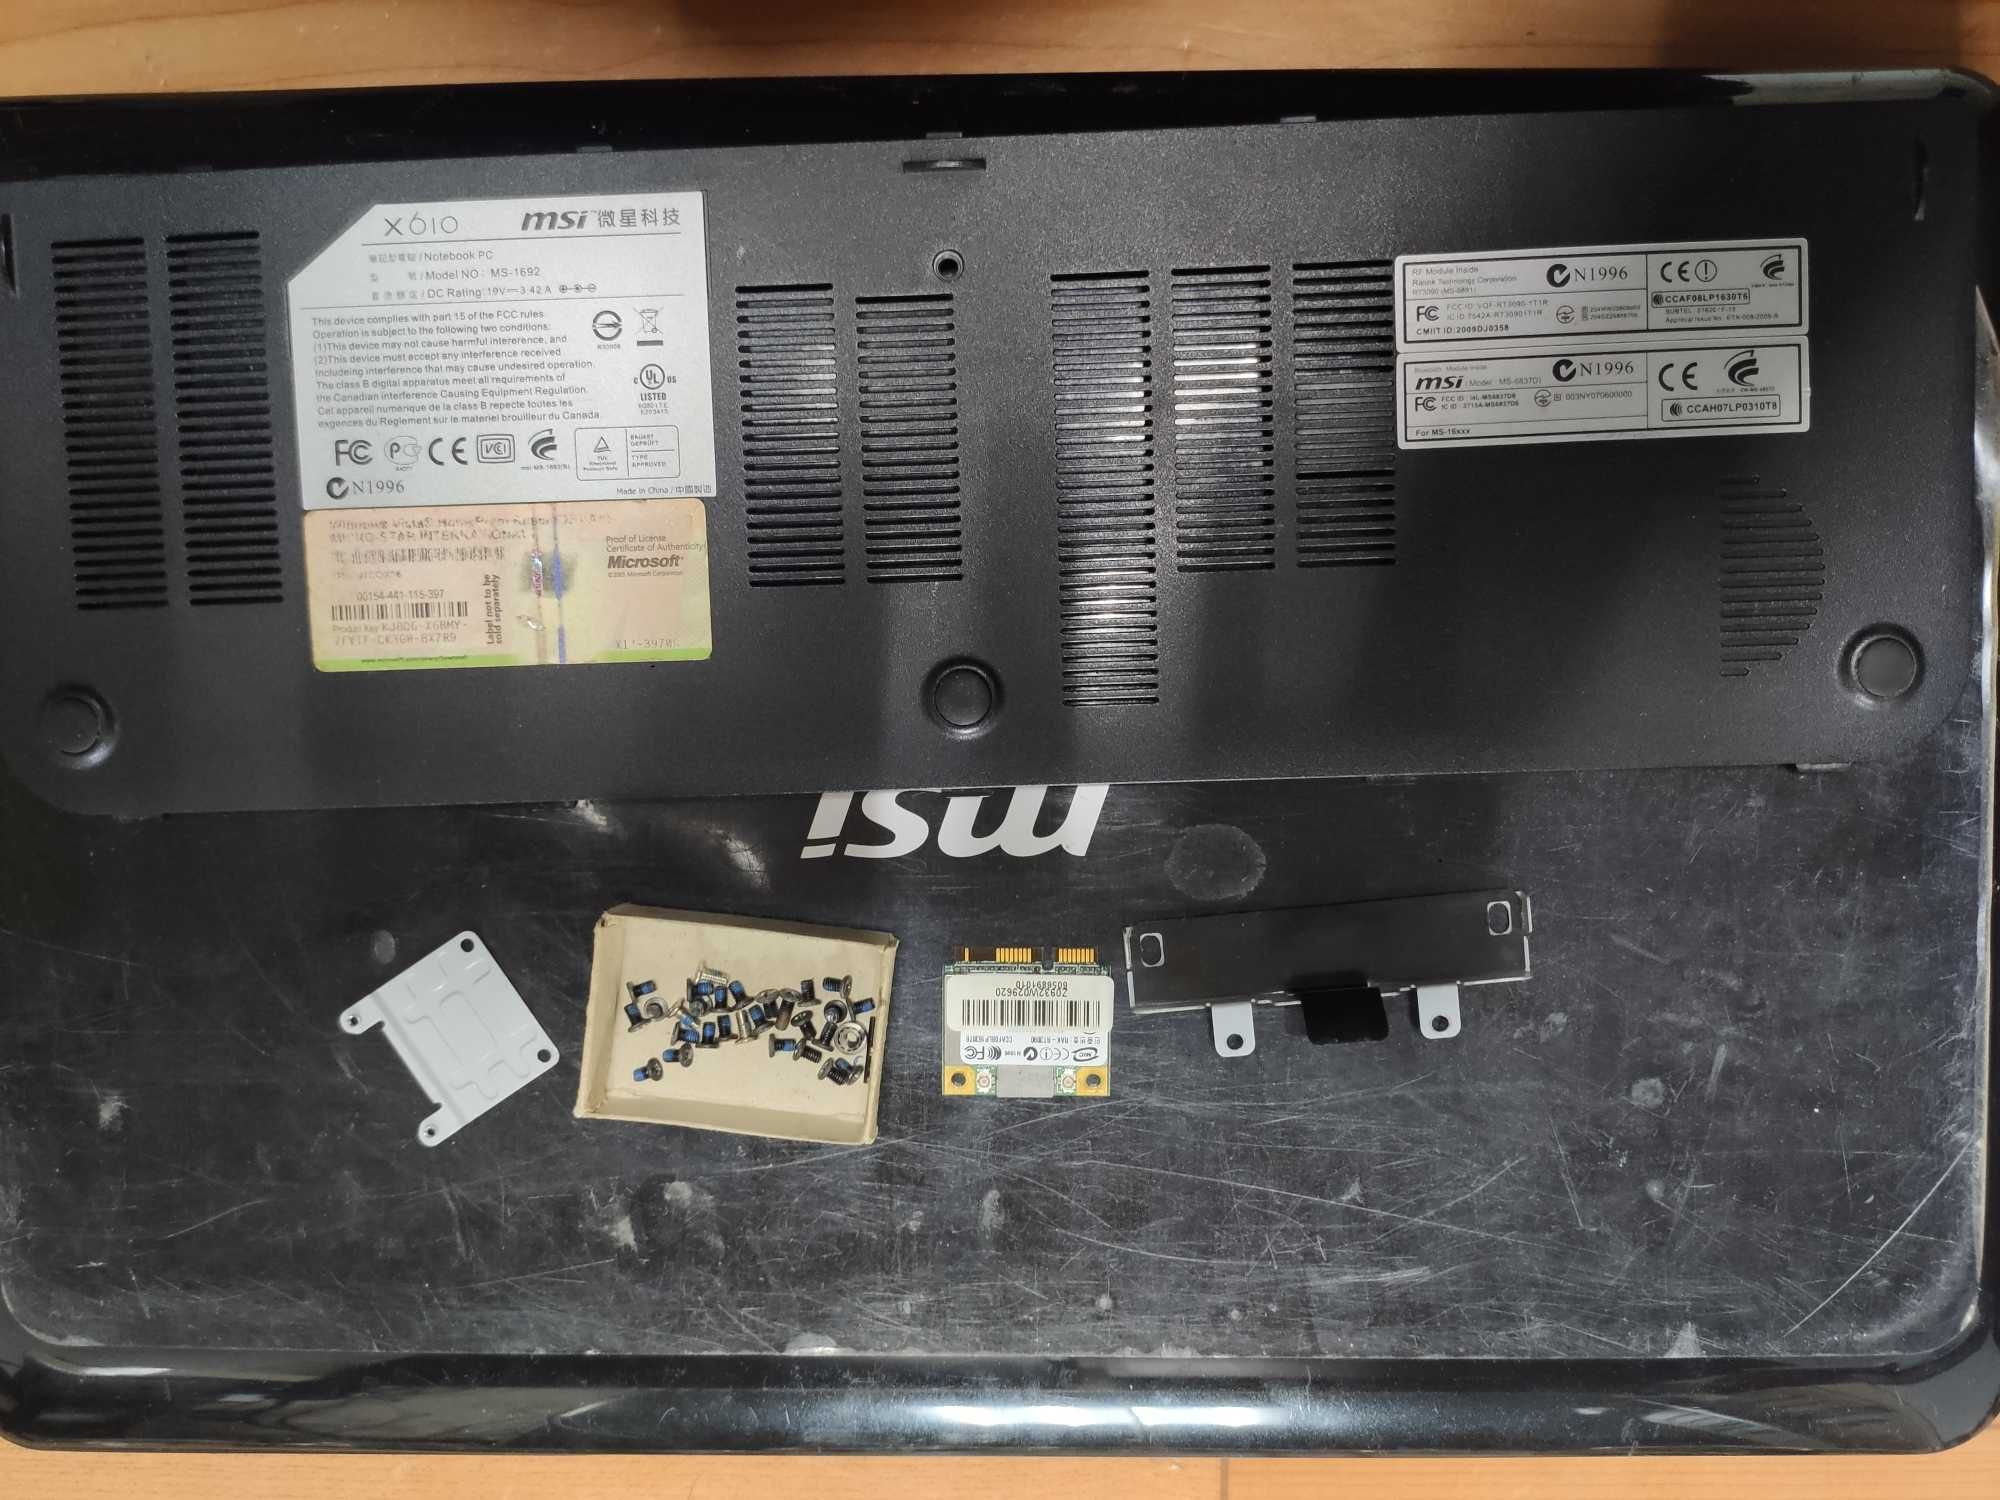 Ноутбук MSI X610 (X610-008UA) под разборку